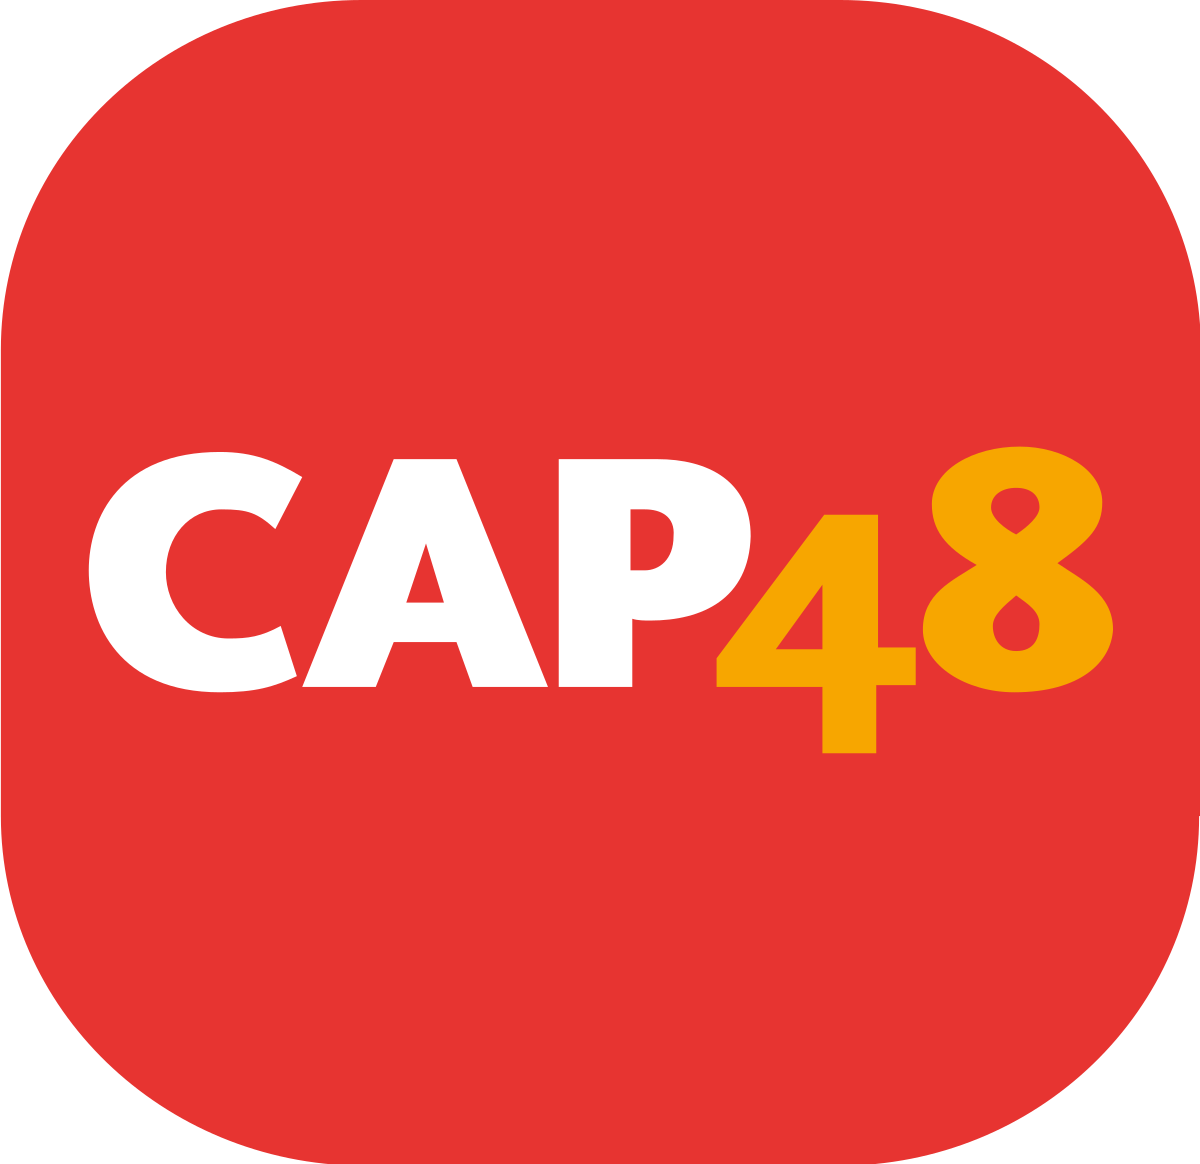 CAP 48 - Viva for life